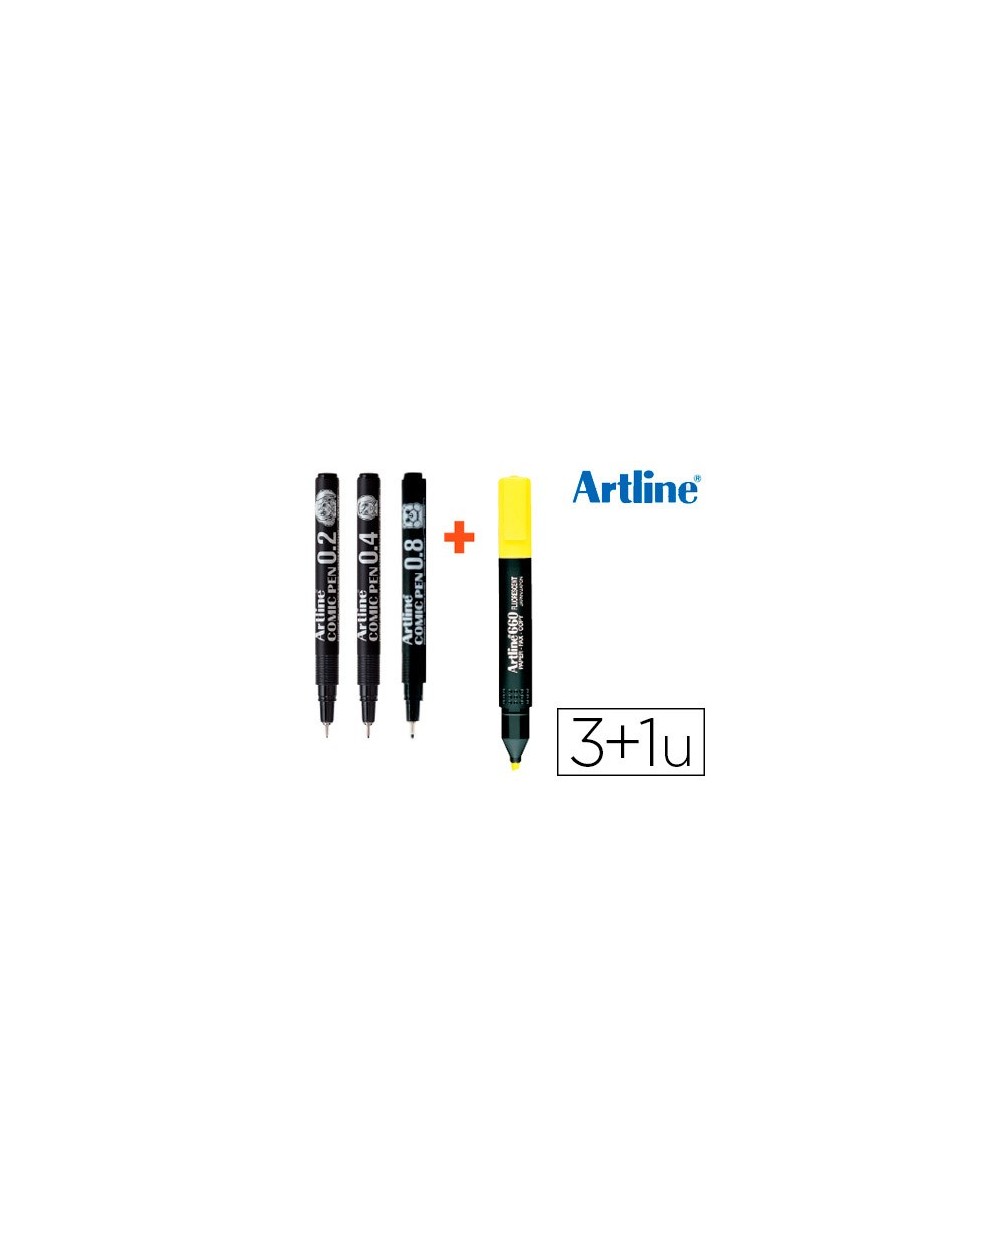 Rotulador artline comic pen calibrado micrometrico negro bolsa de 3 uds 02 04 08 fluorescente 660